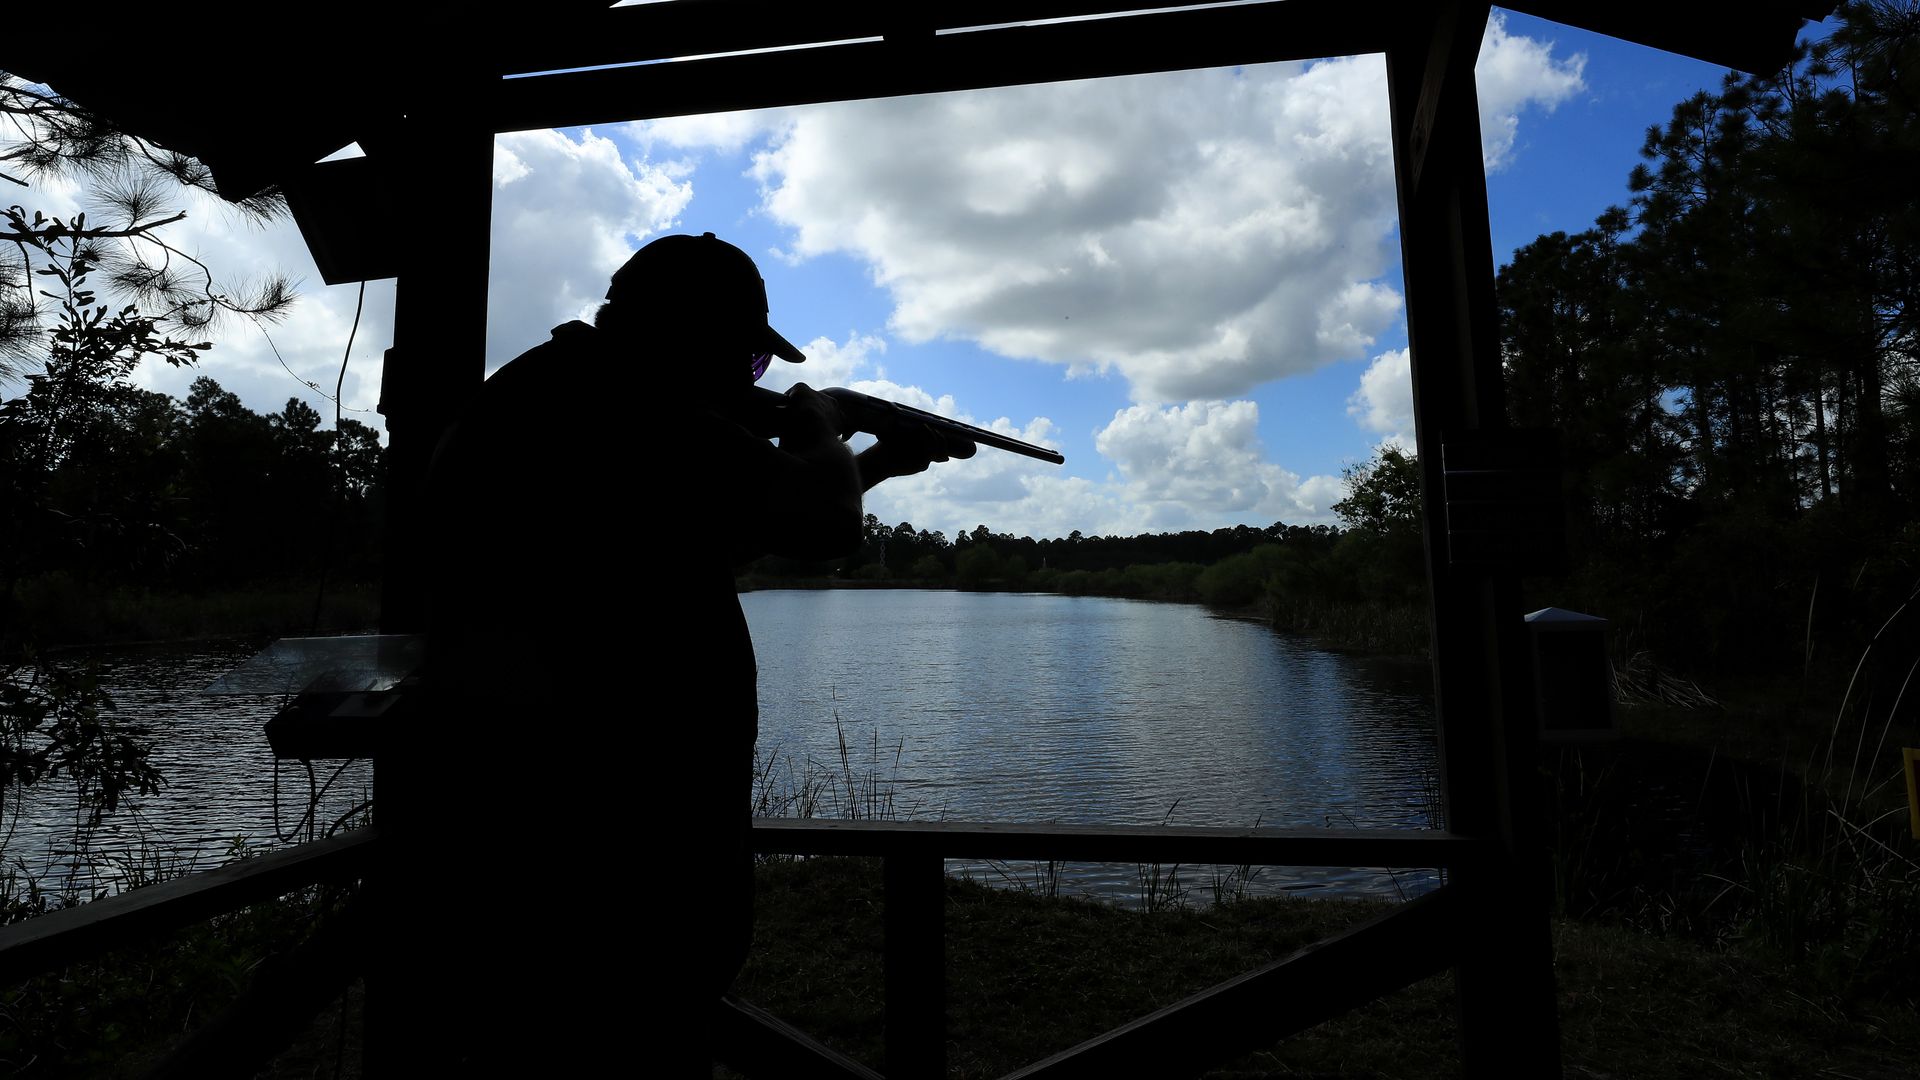 A rifleman in silhouette aims a gun over a lake 